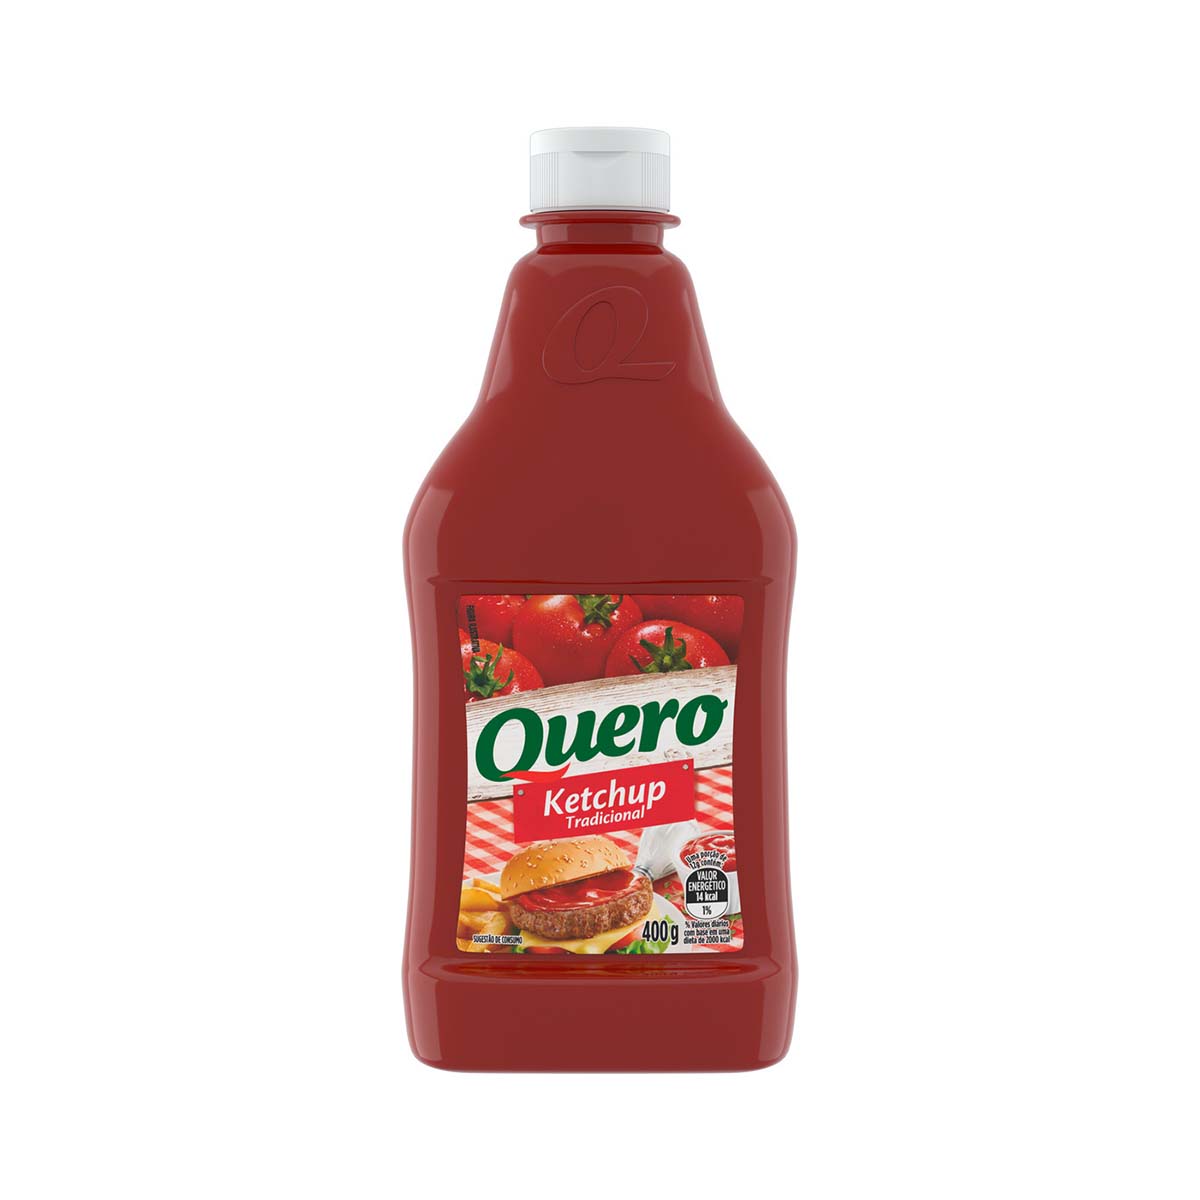 ketchup-quero-tradicional-400g-1.jpg